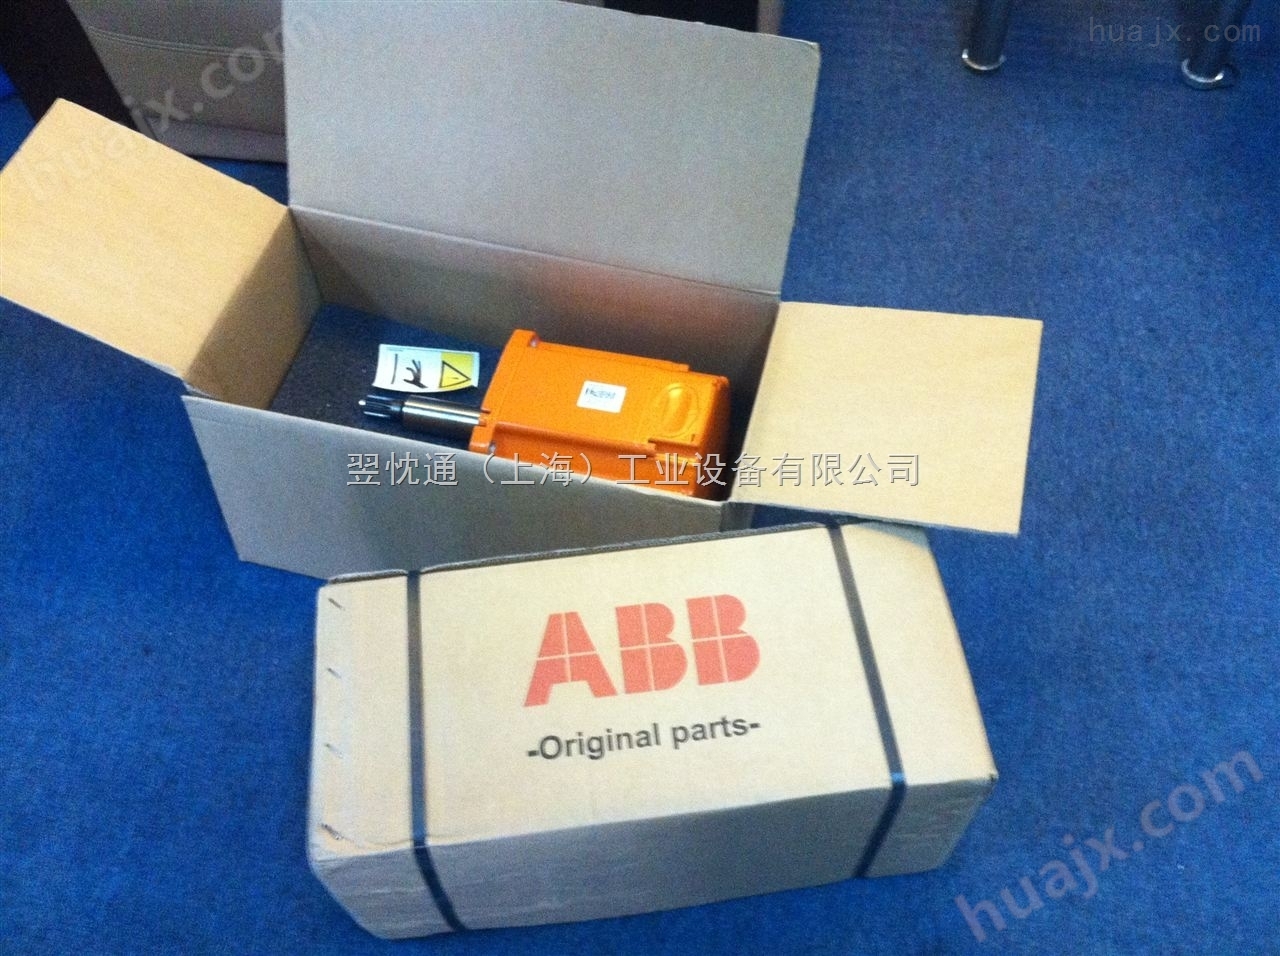 巴中市 ABB机器人备件3HAC022484-001大量现货